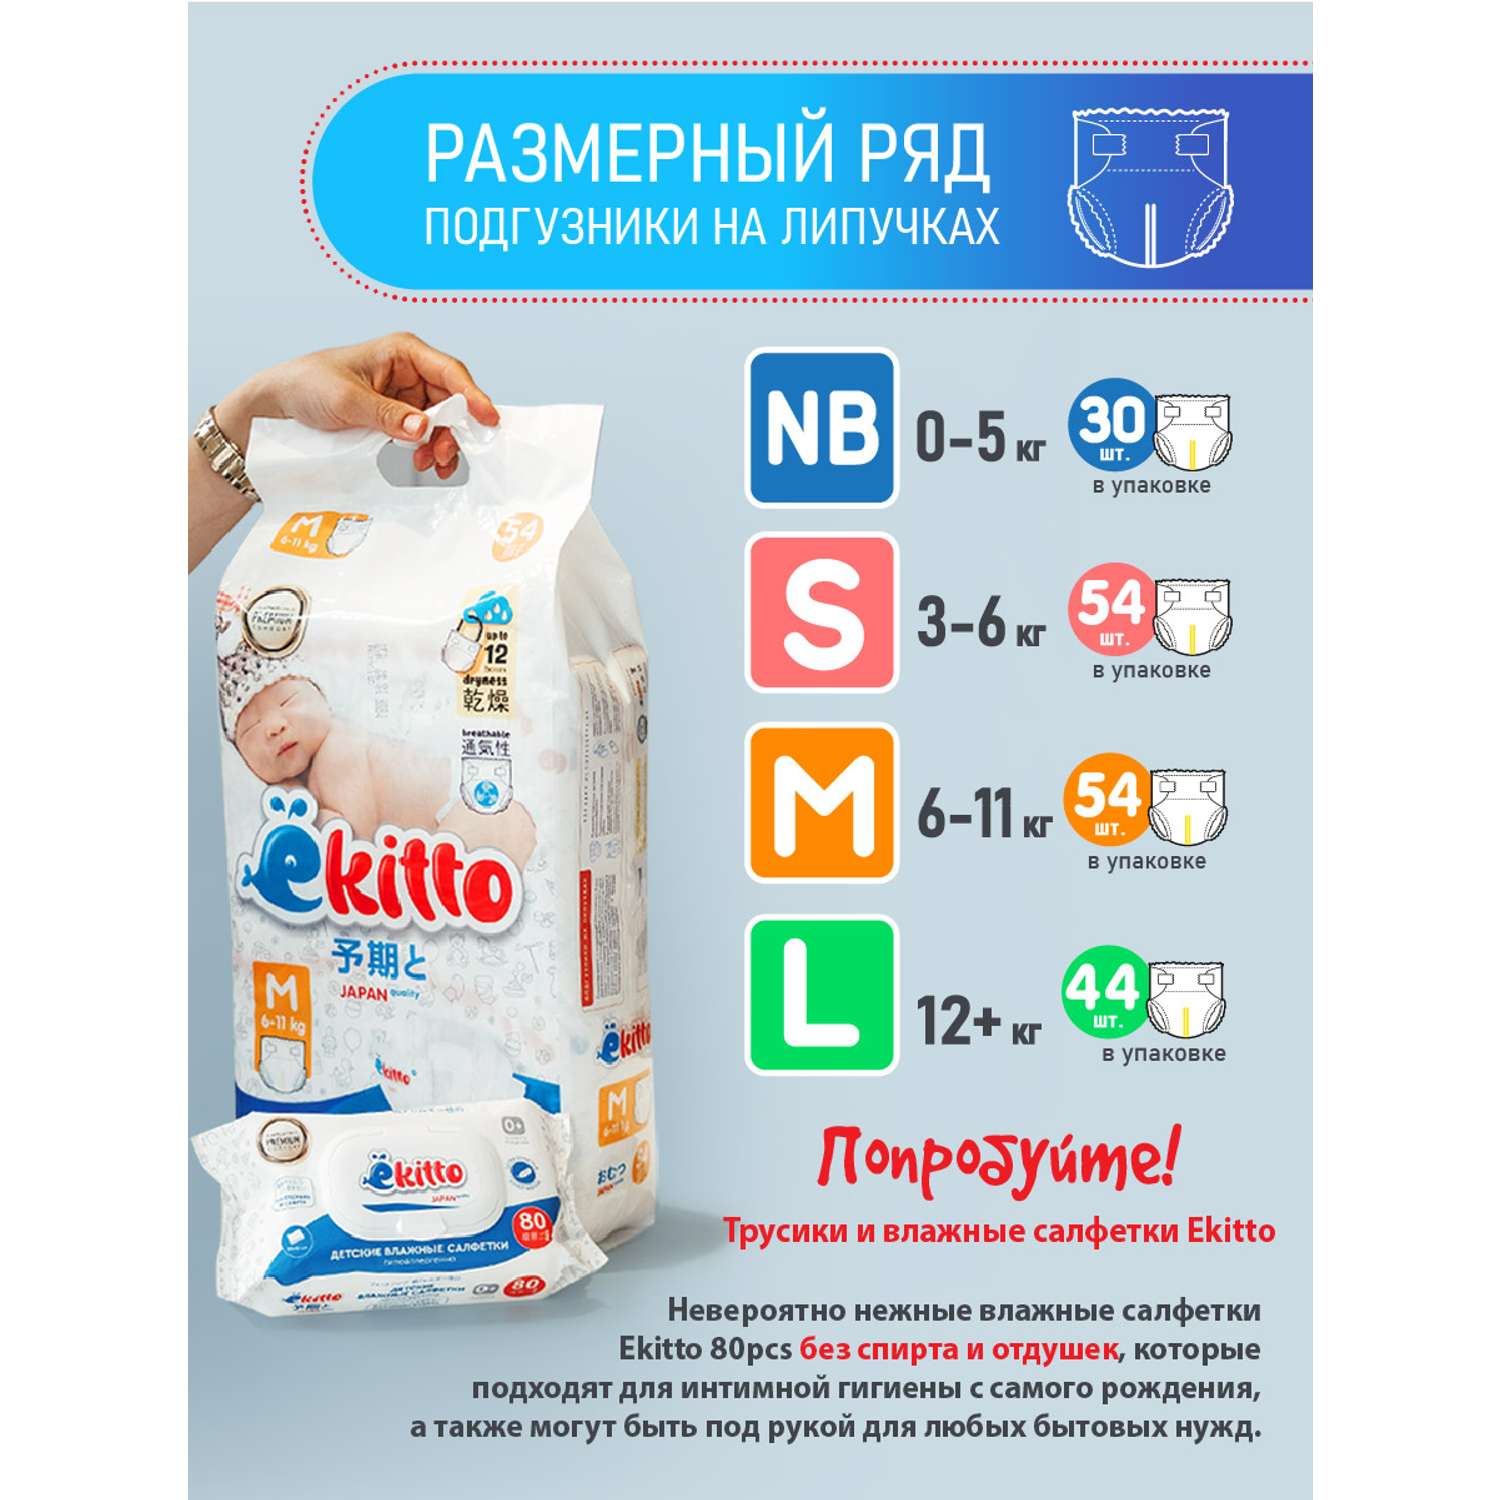 Подгузники Ekitto 3 размер M для новорожденных детей от 6-11 кг 54 шт - фото 9